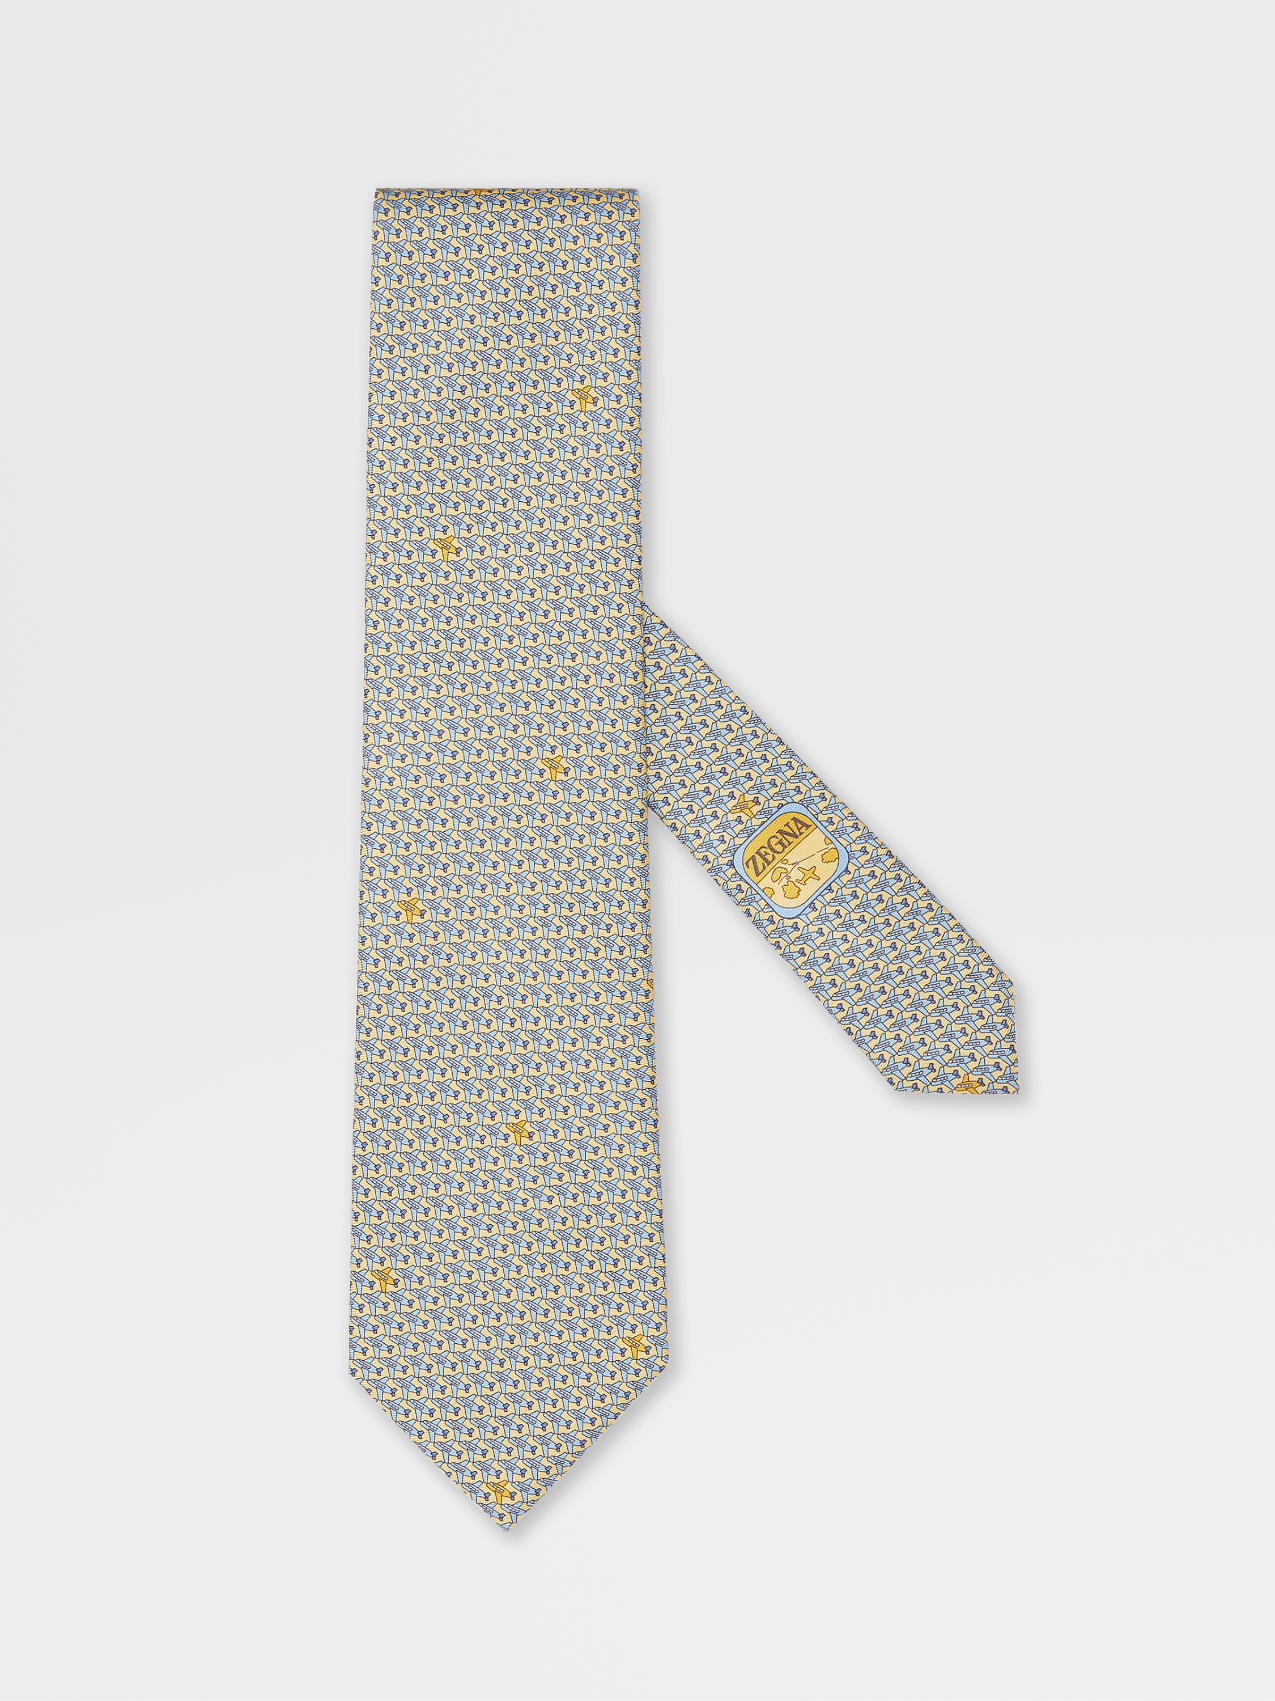 黄色桑蚕丝领带